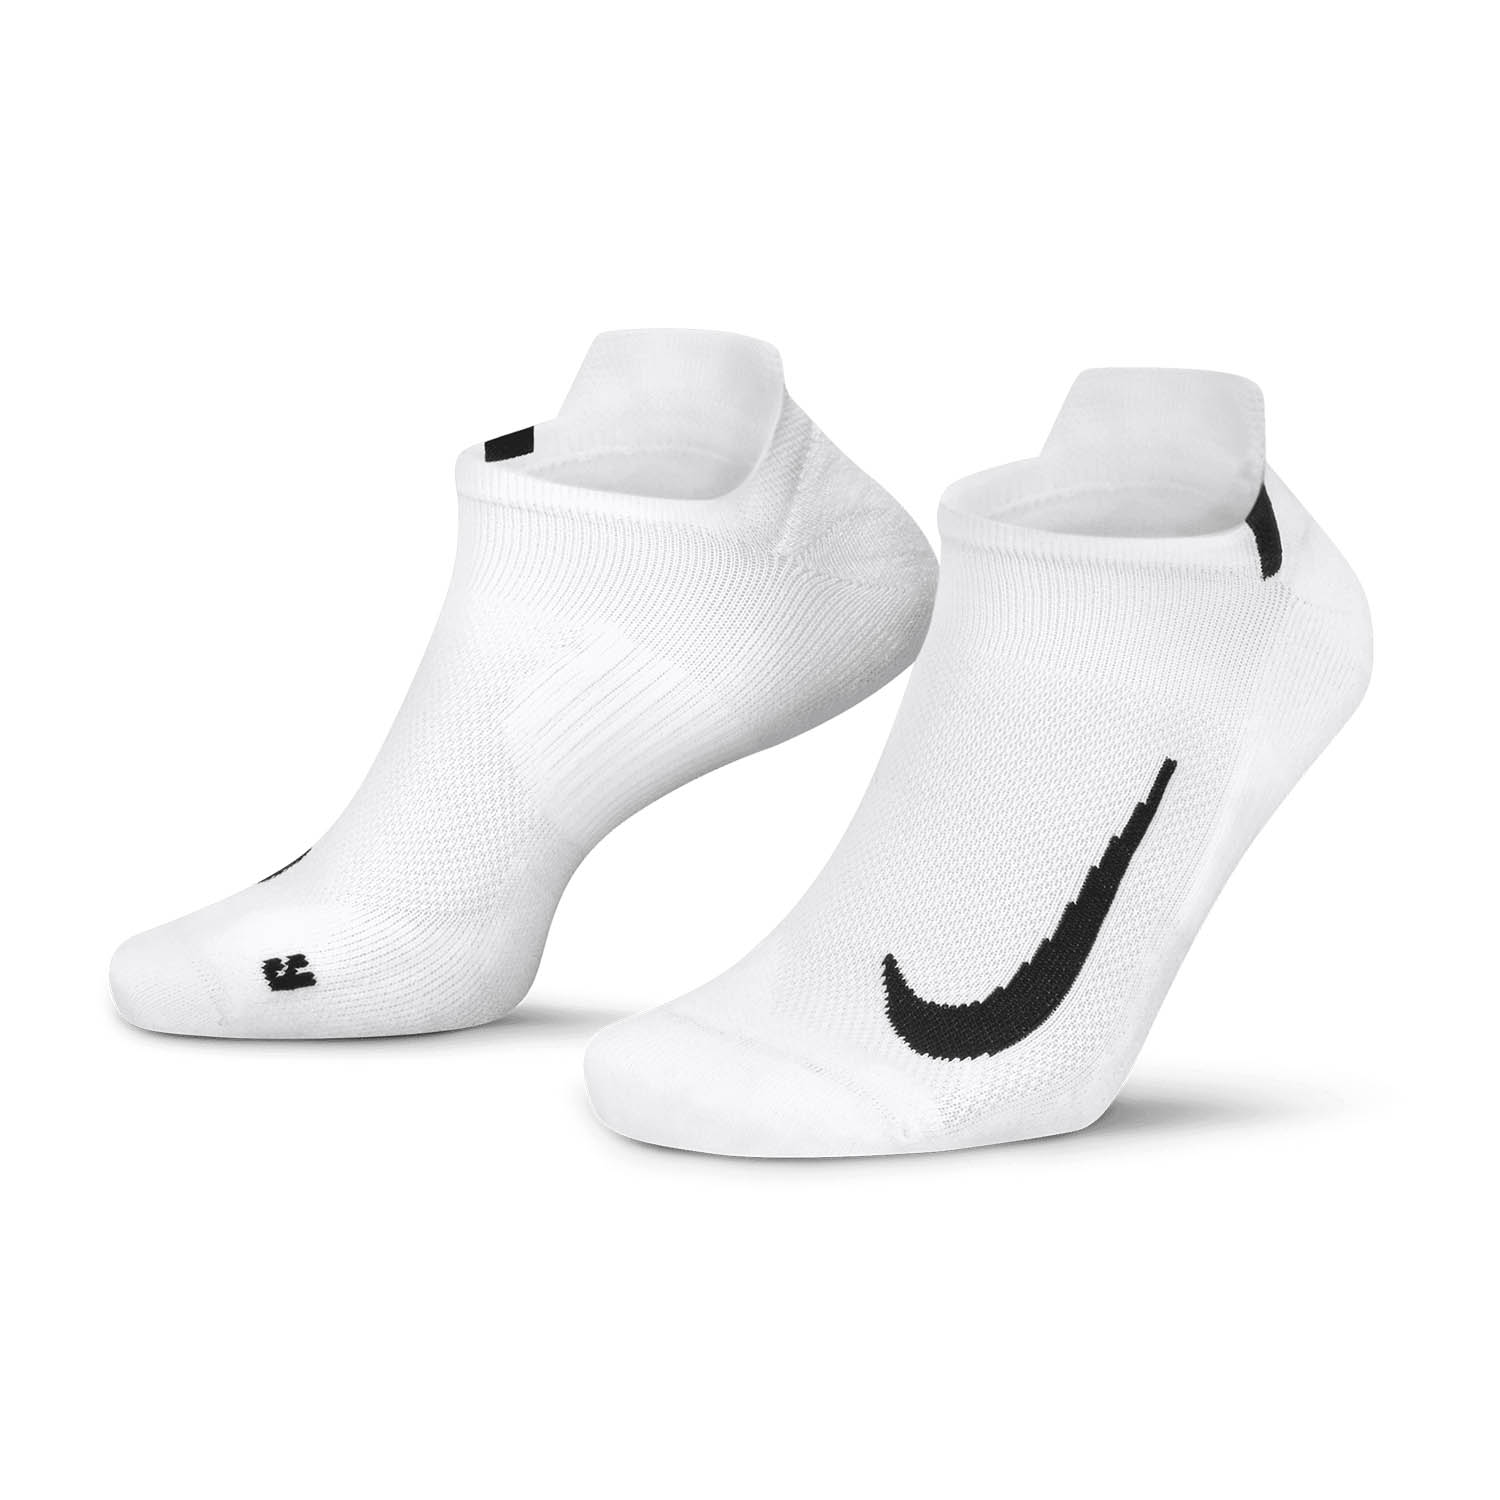 Nike Multiplier x 2 Running Socks - White/Black